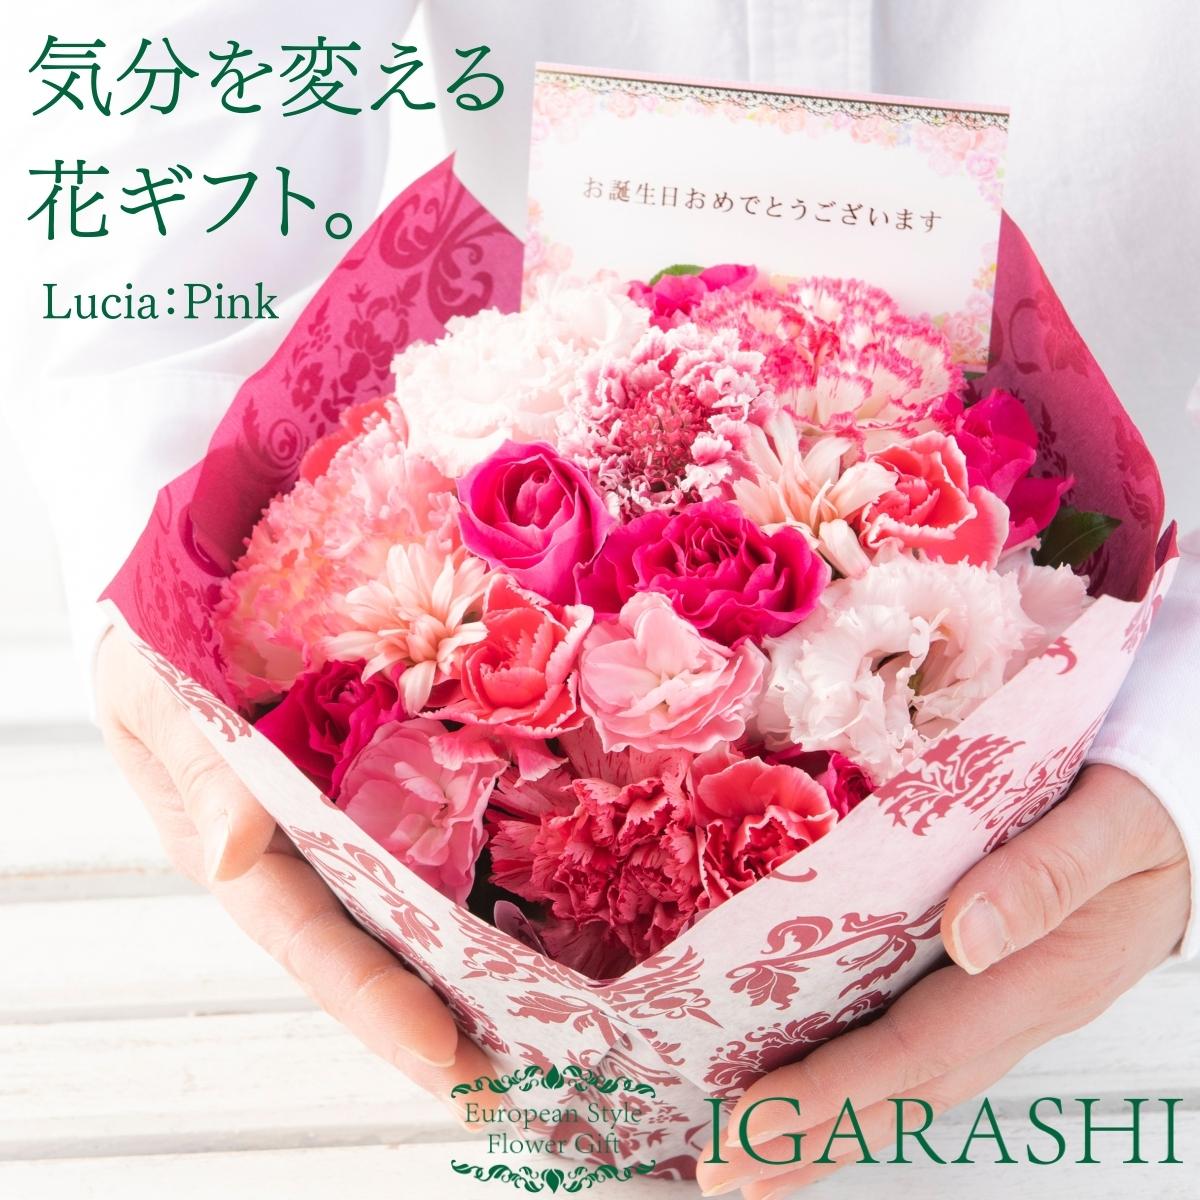 春に花束をプレゼントするなら。妻に贈るお花のギフトでおすすめを教えてください。